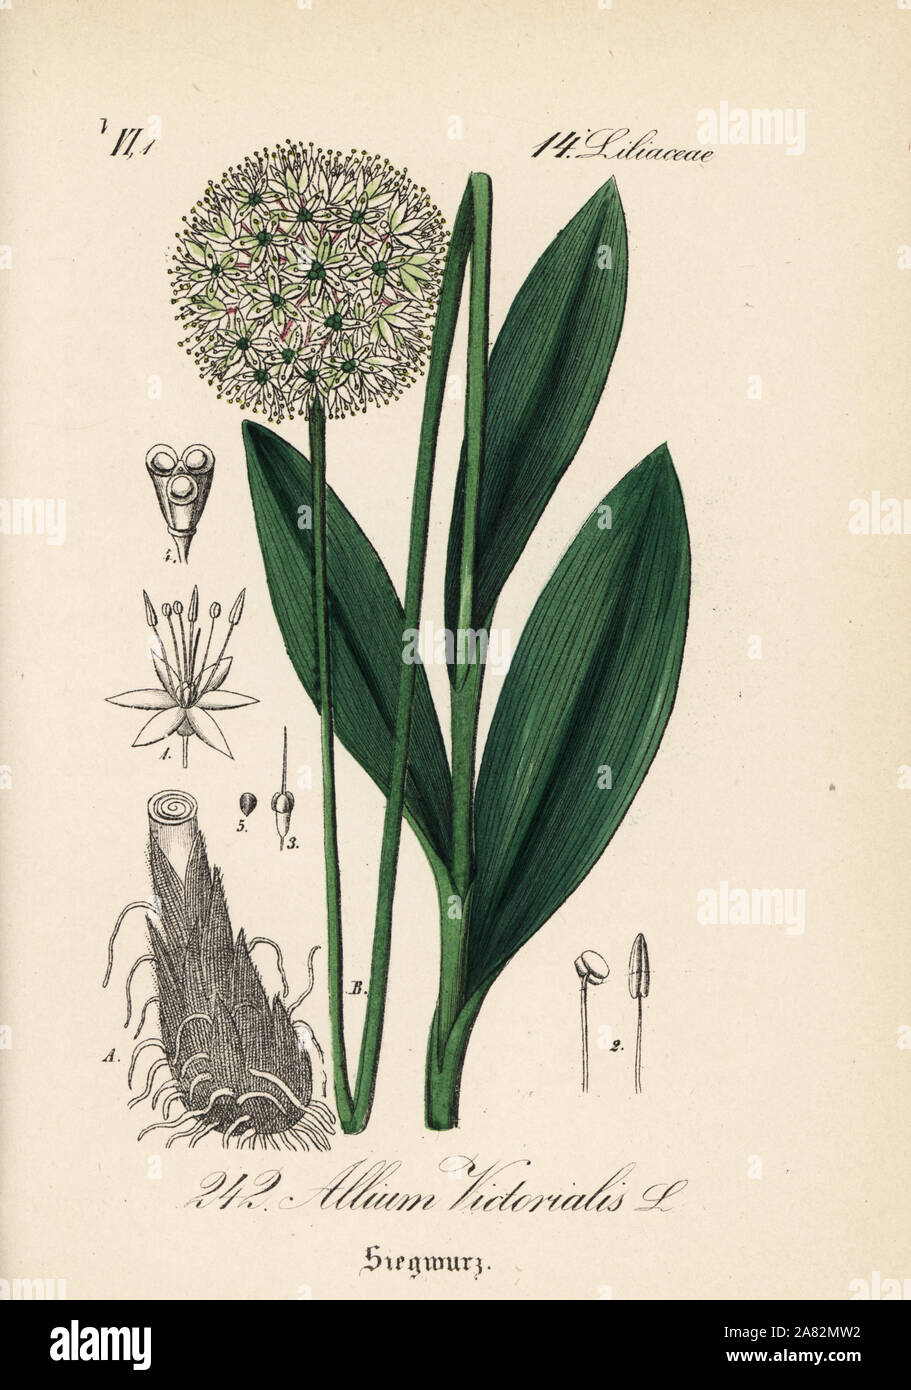 Victory onion or Alpine leek, Allium victorialis. Handcoloured lithograph from Diederich von Schlechtendal's German Flora (Flora von Deutschland), Jena, 1871. Stock Photo